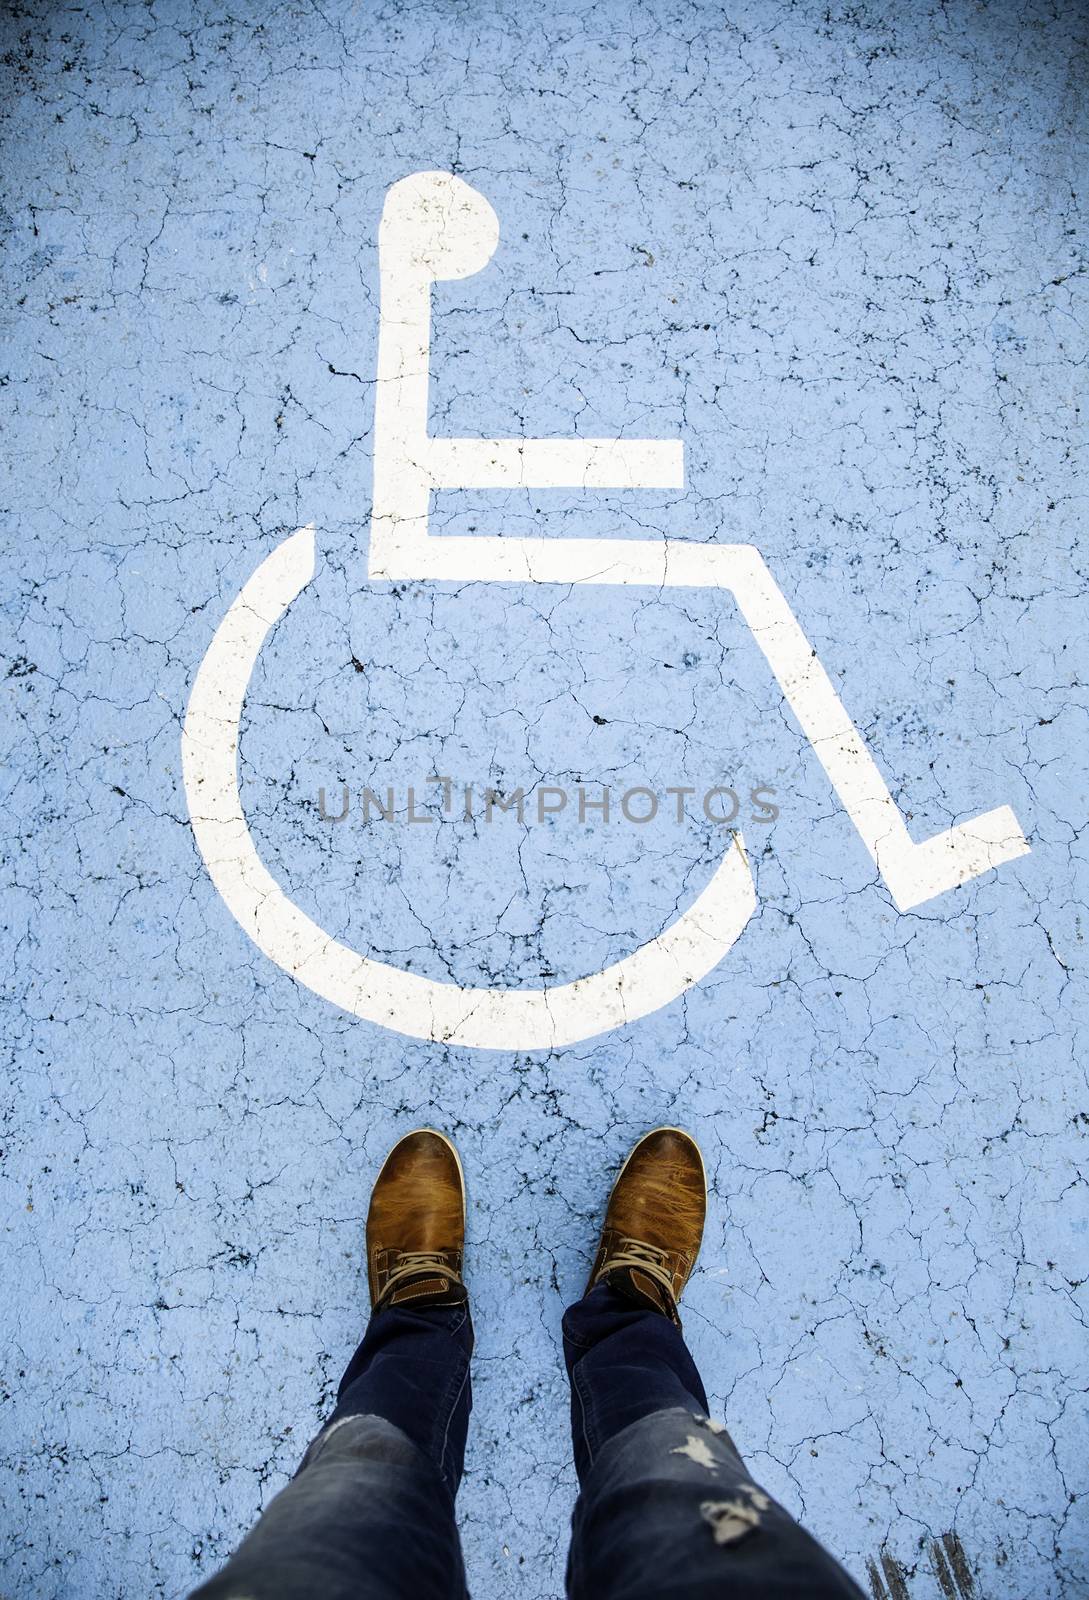 Disabled sign on the asphalt by esebene